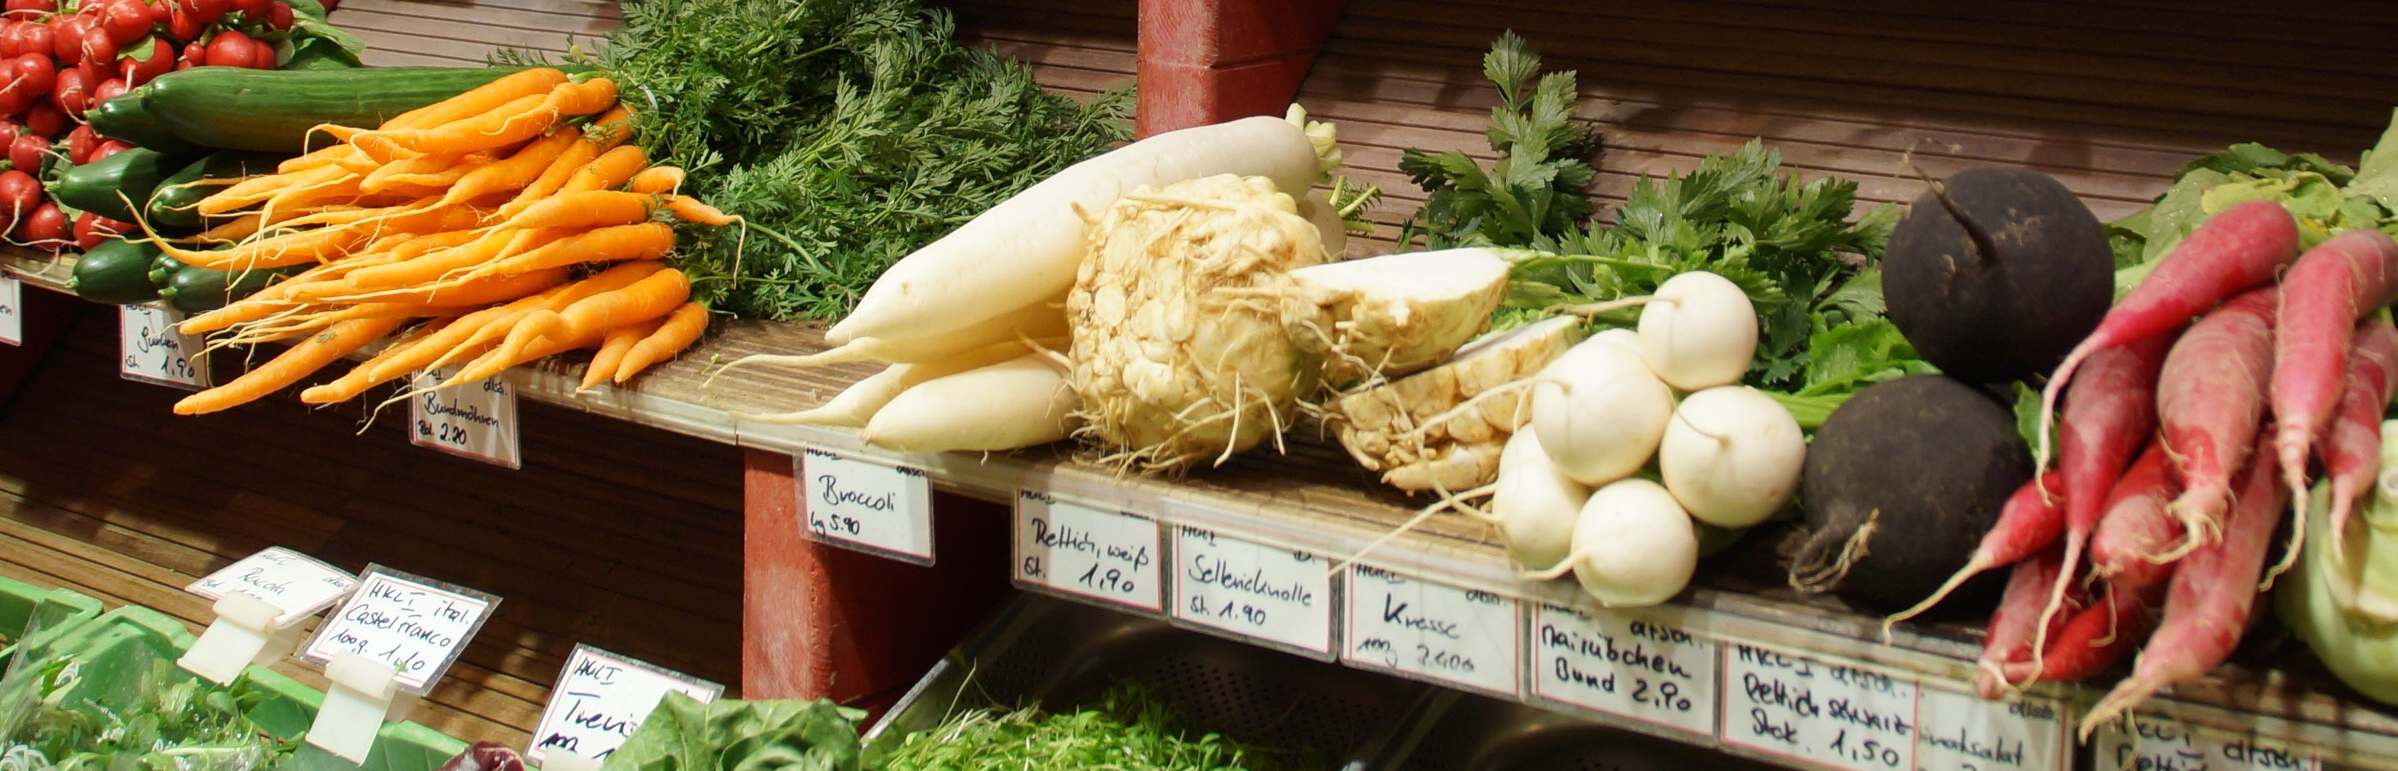 Verschiedene Gemüsesorten werden in einem Marktregal präsentiert.